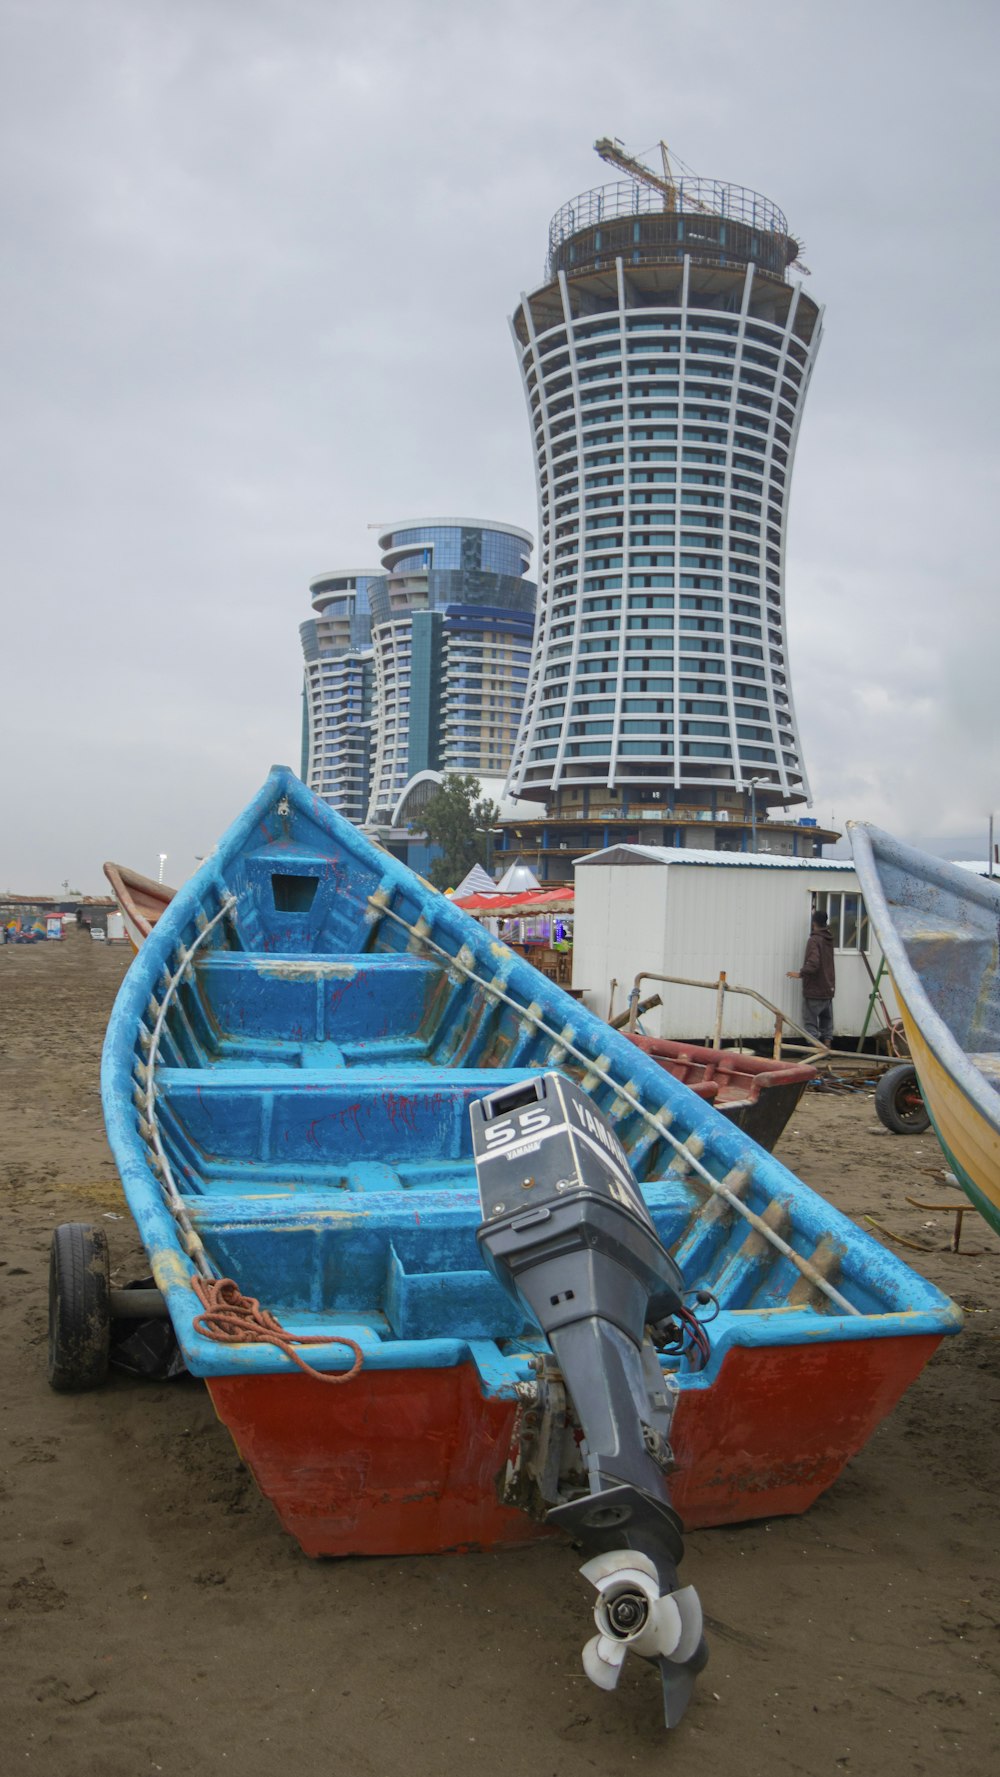 Ein blau-rotes Boot auf einem Sandstrand